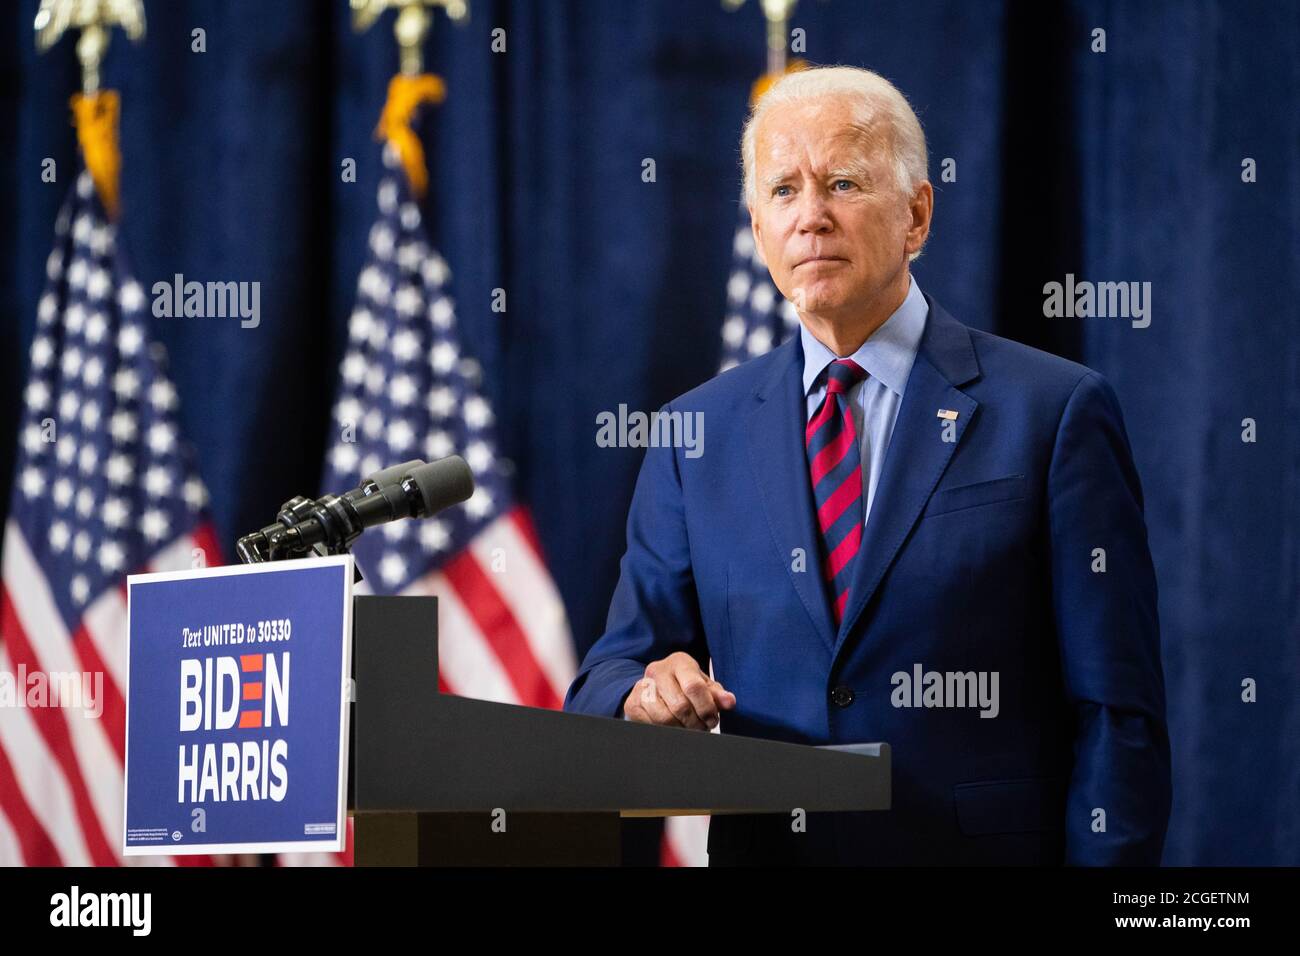 WILMINGTON, PA, Etats-Unis - 04 septembre 2020 - Joe Biden, candidat démocrate à la présidence des Etats-Unis, lors d'une conférence de presse sur « l'état de l'économie américaine annd Job » Banque D'Images